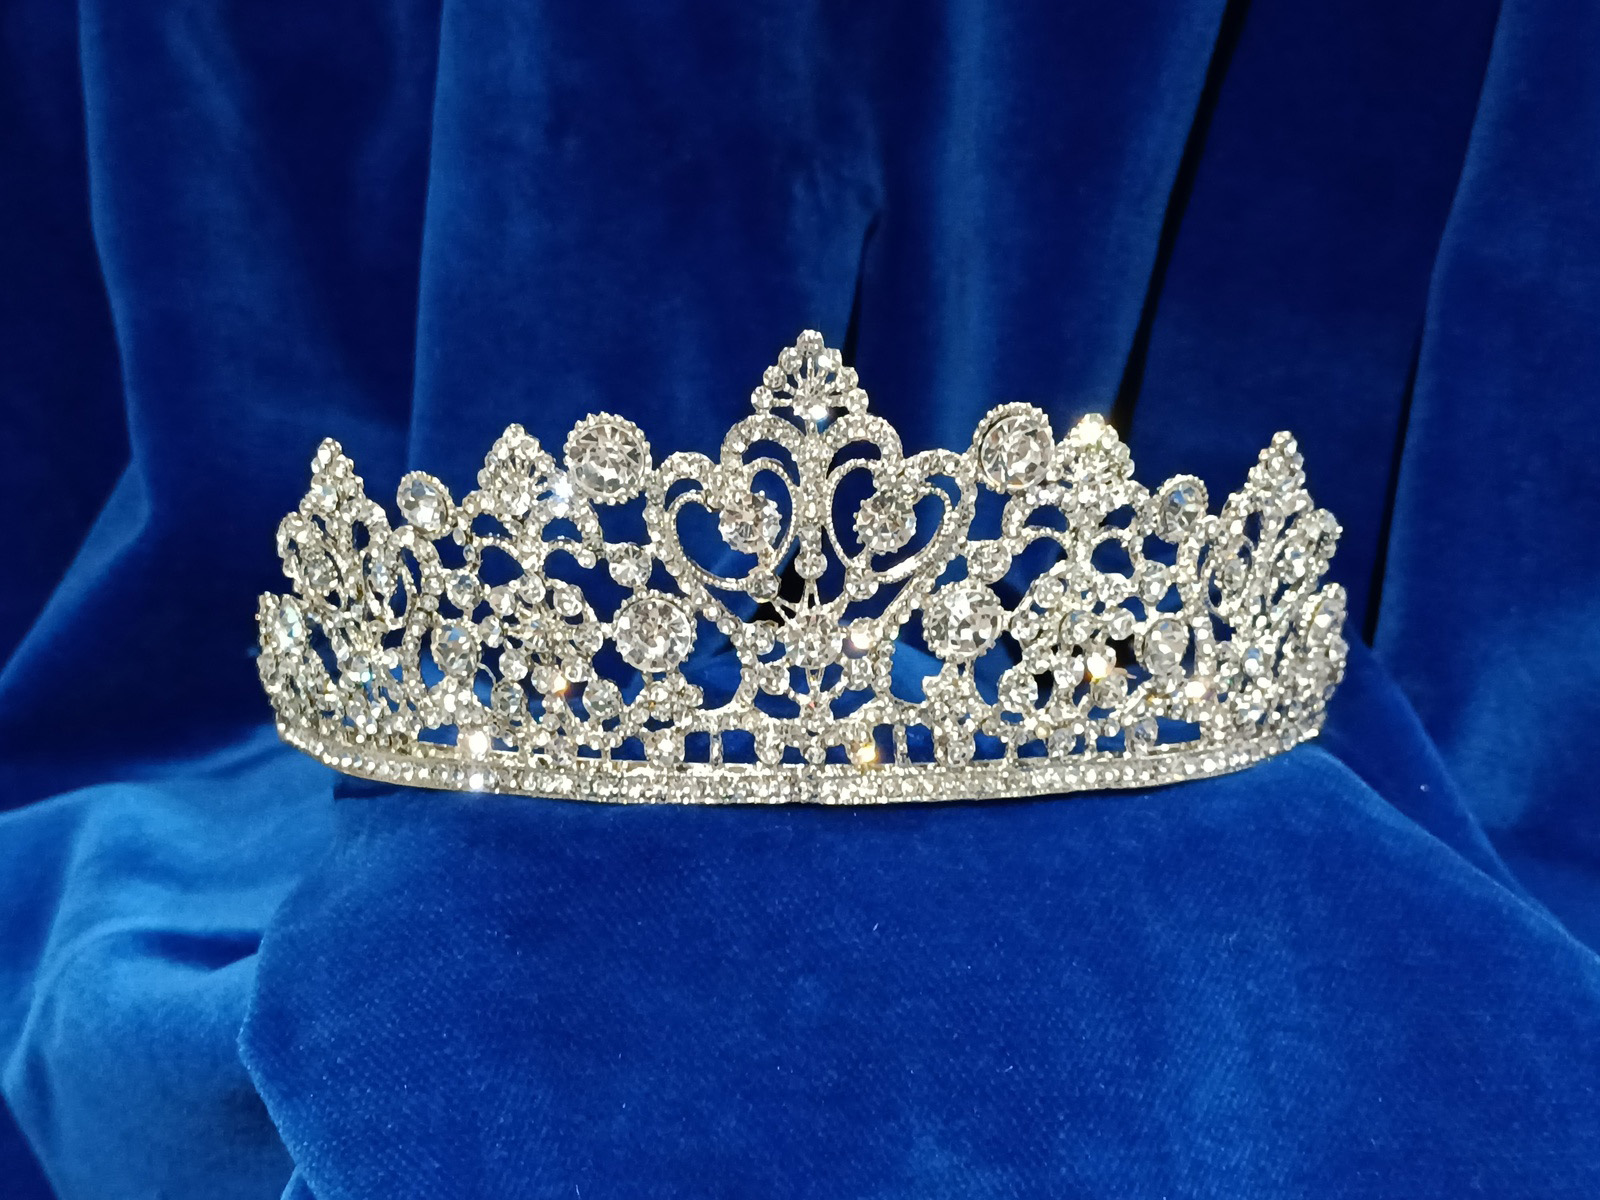 Corona Cristal Infanta